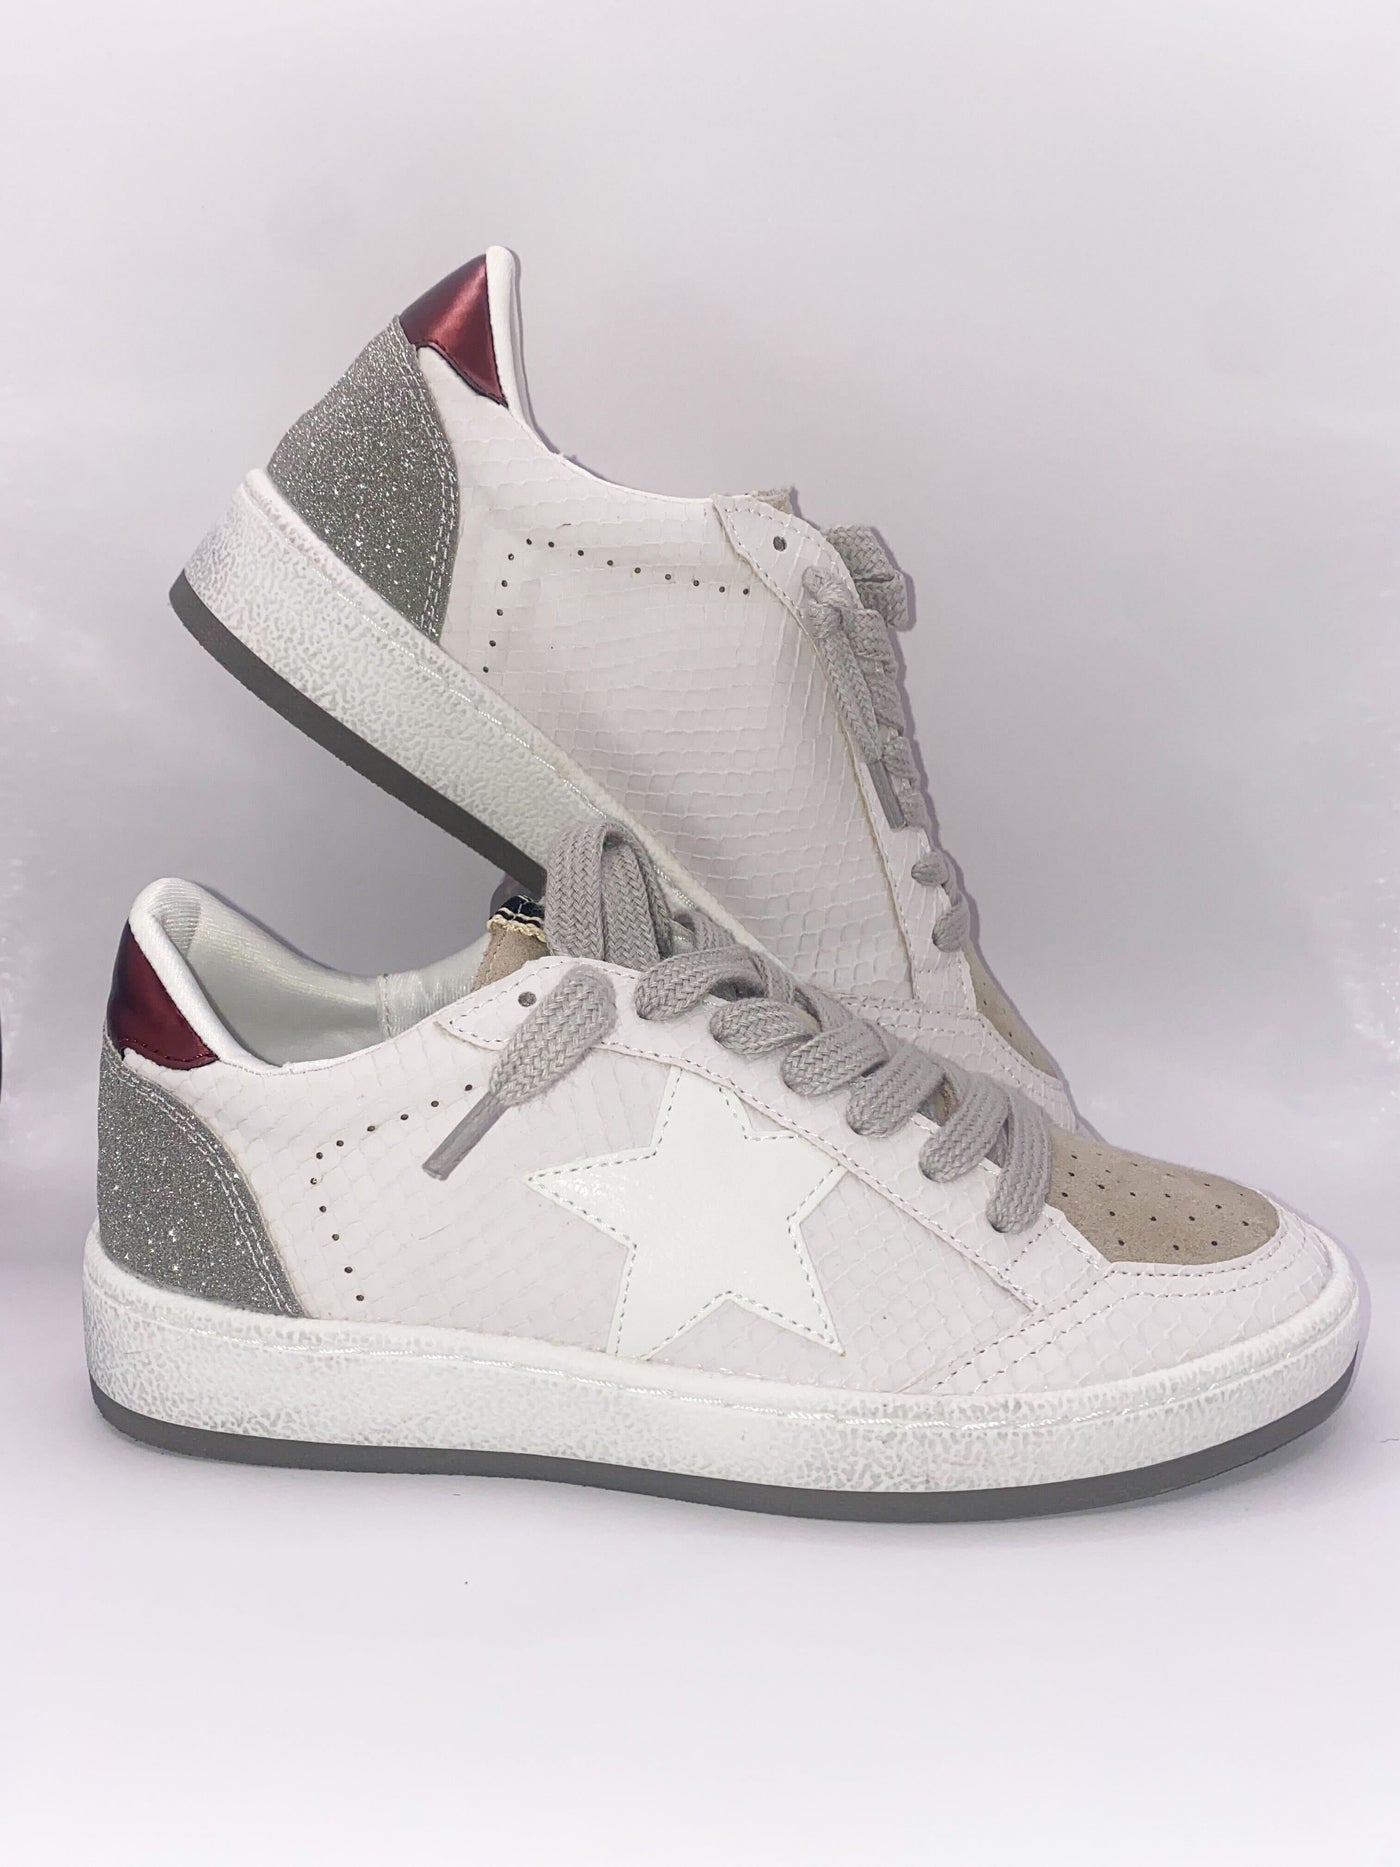 Shu Shop Paz Sneakers-180 - SHOES-SHU SHOP-[option4]-[option5]-[option6]-Leather & Lace Boutique Shop